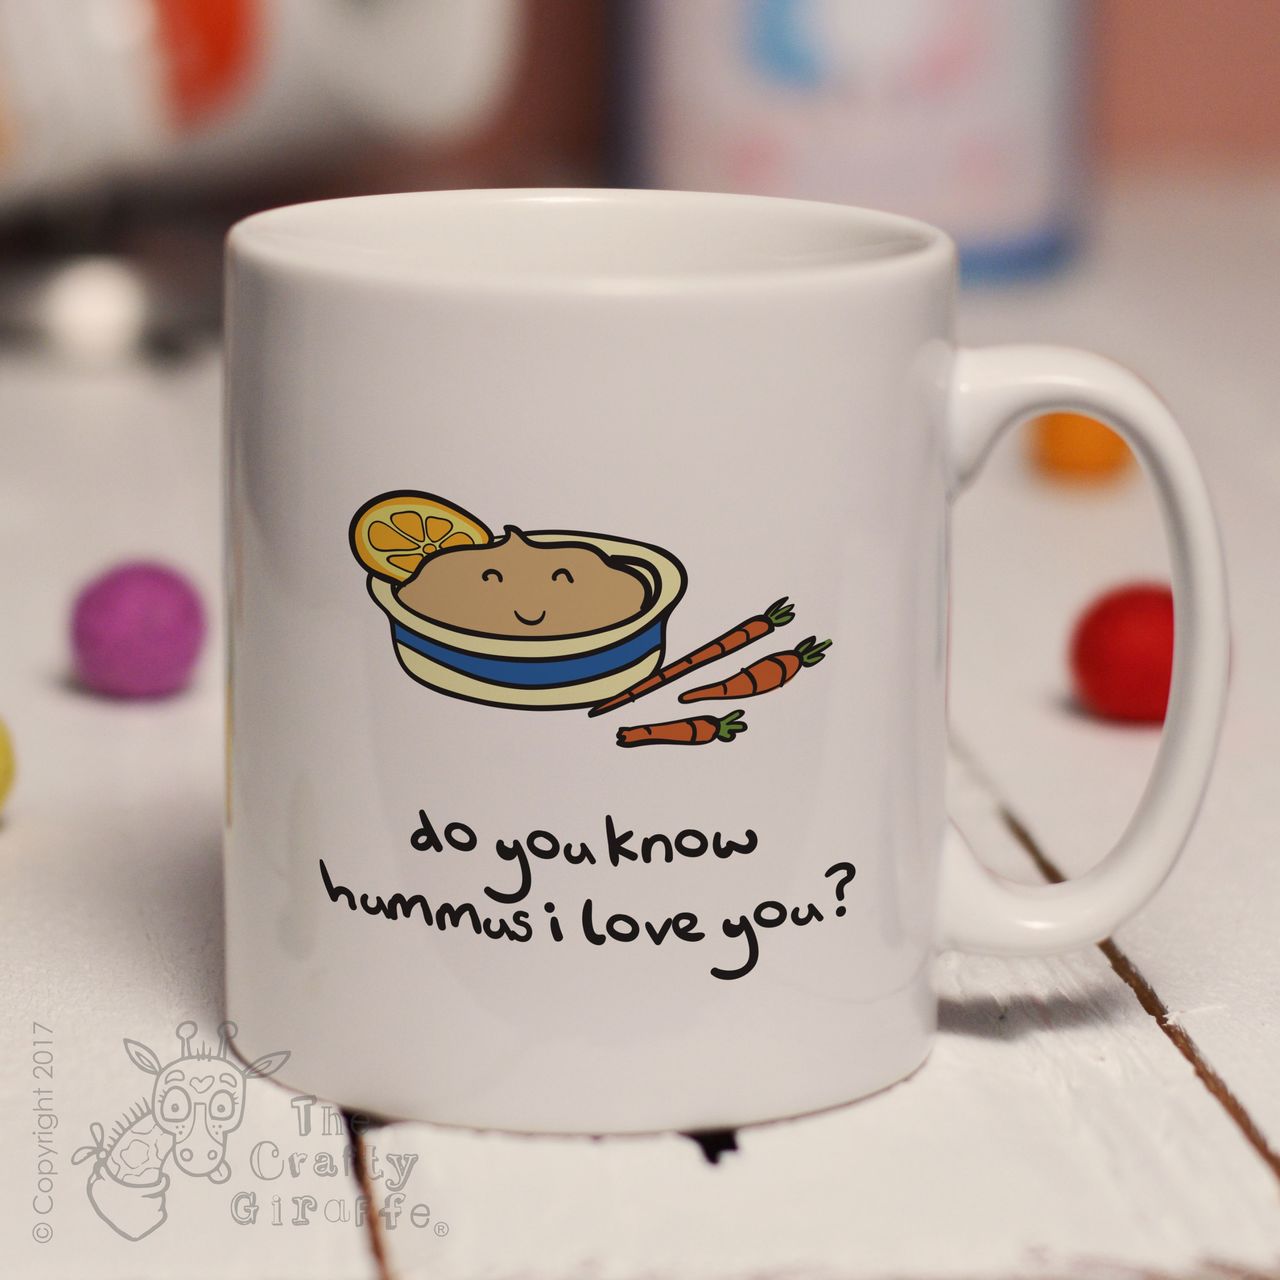 Do you know hummus I love you mug